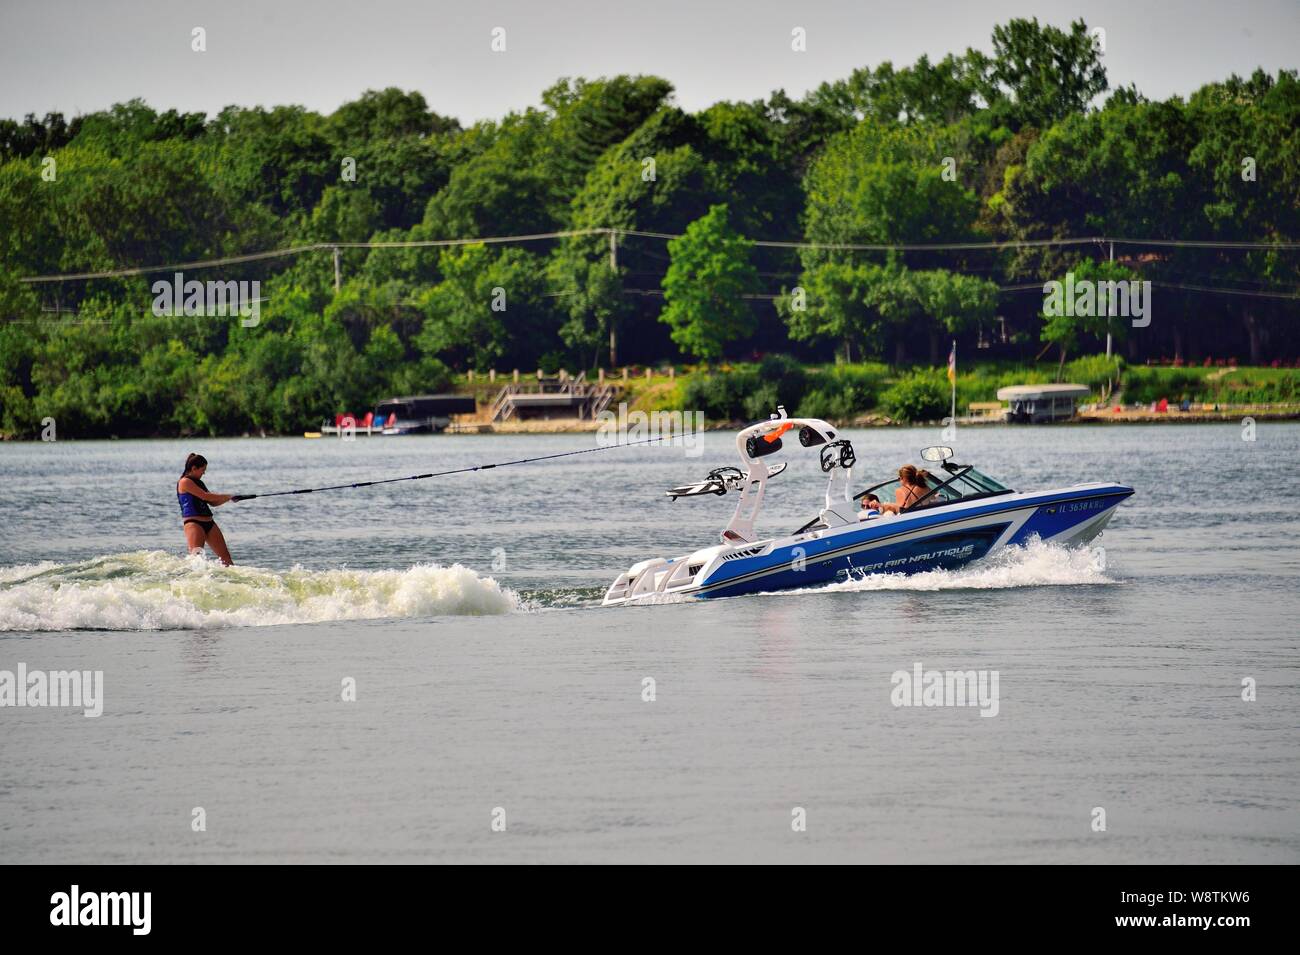 Le lac de Zurich, Illinois, USA. Skieuse nautique bénéficiant d'un après-midi d'été de l'activité sur le lac homonyme du village. Banque D'Images